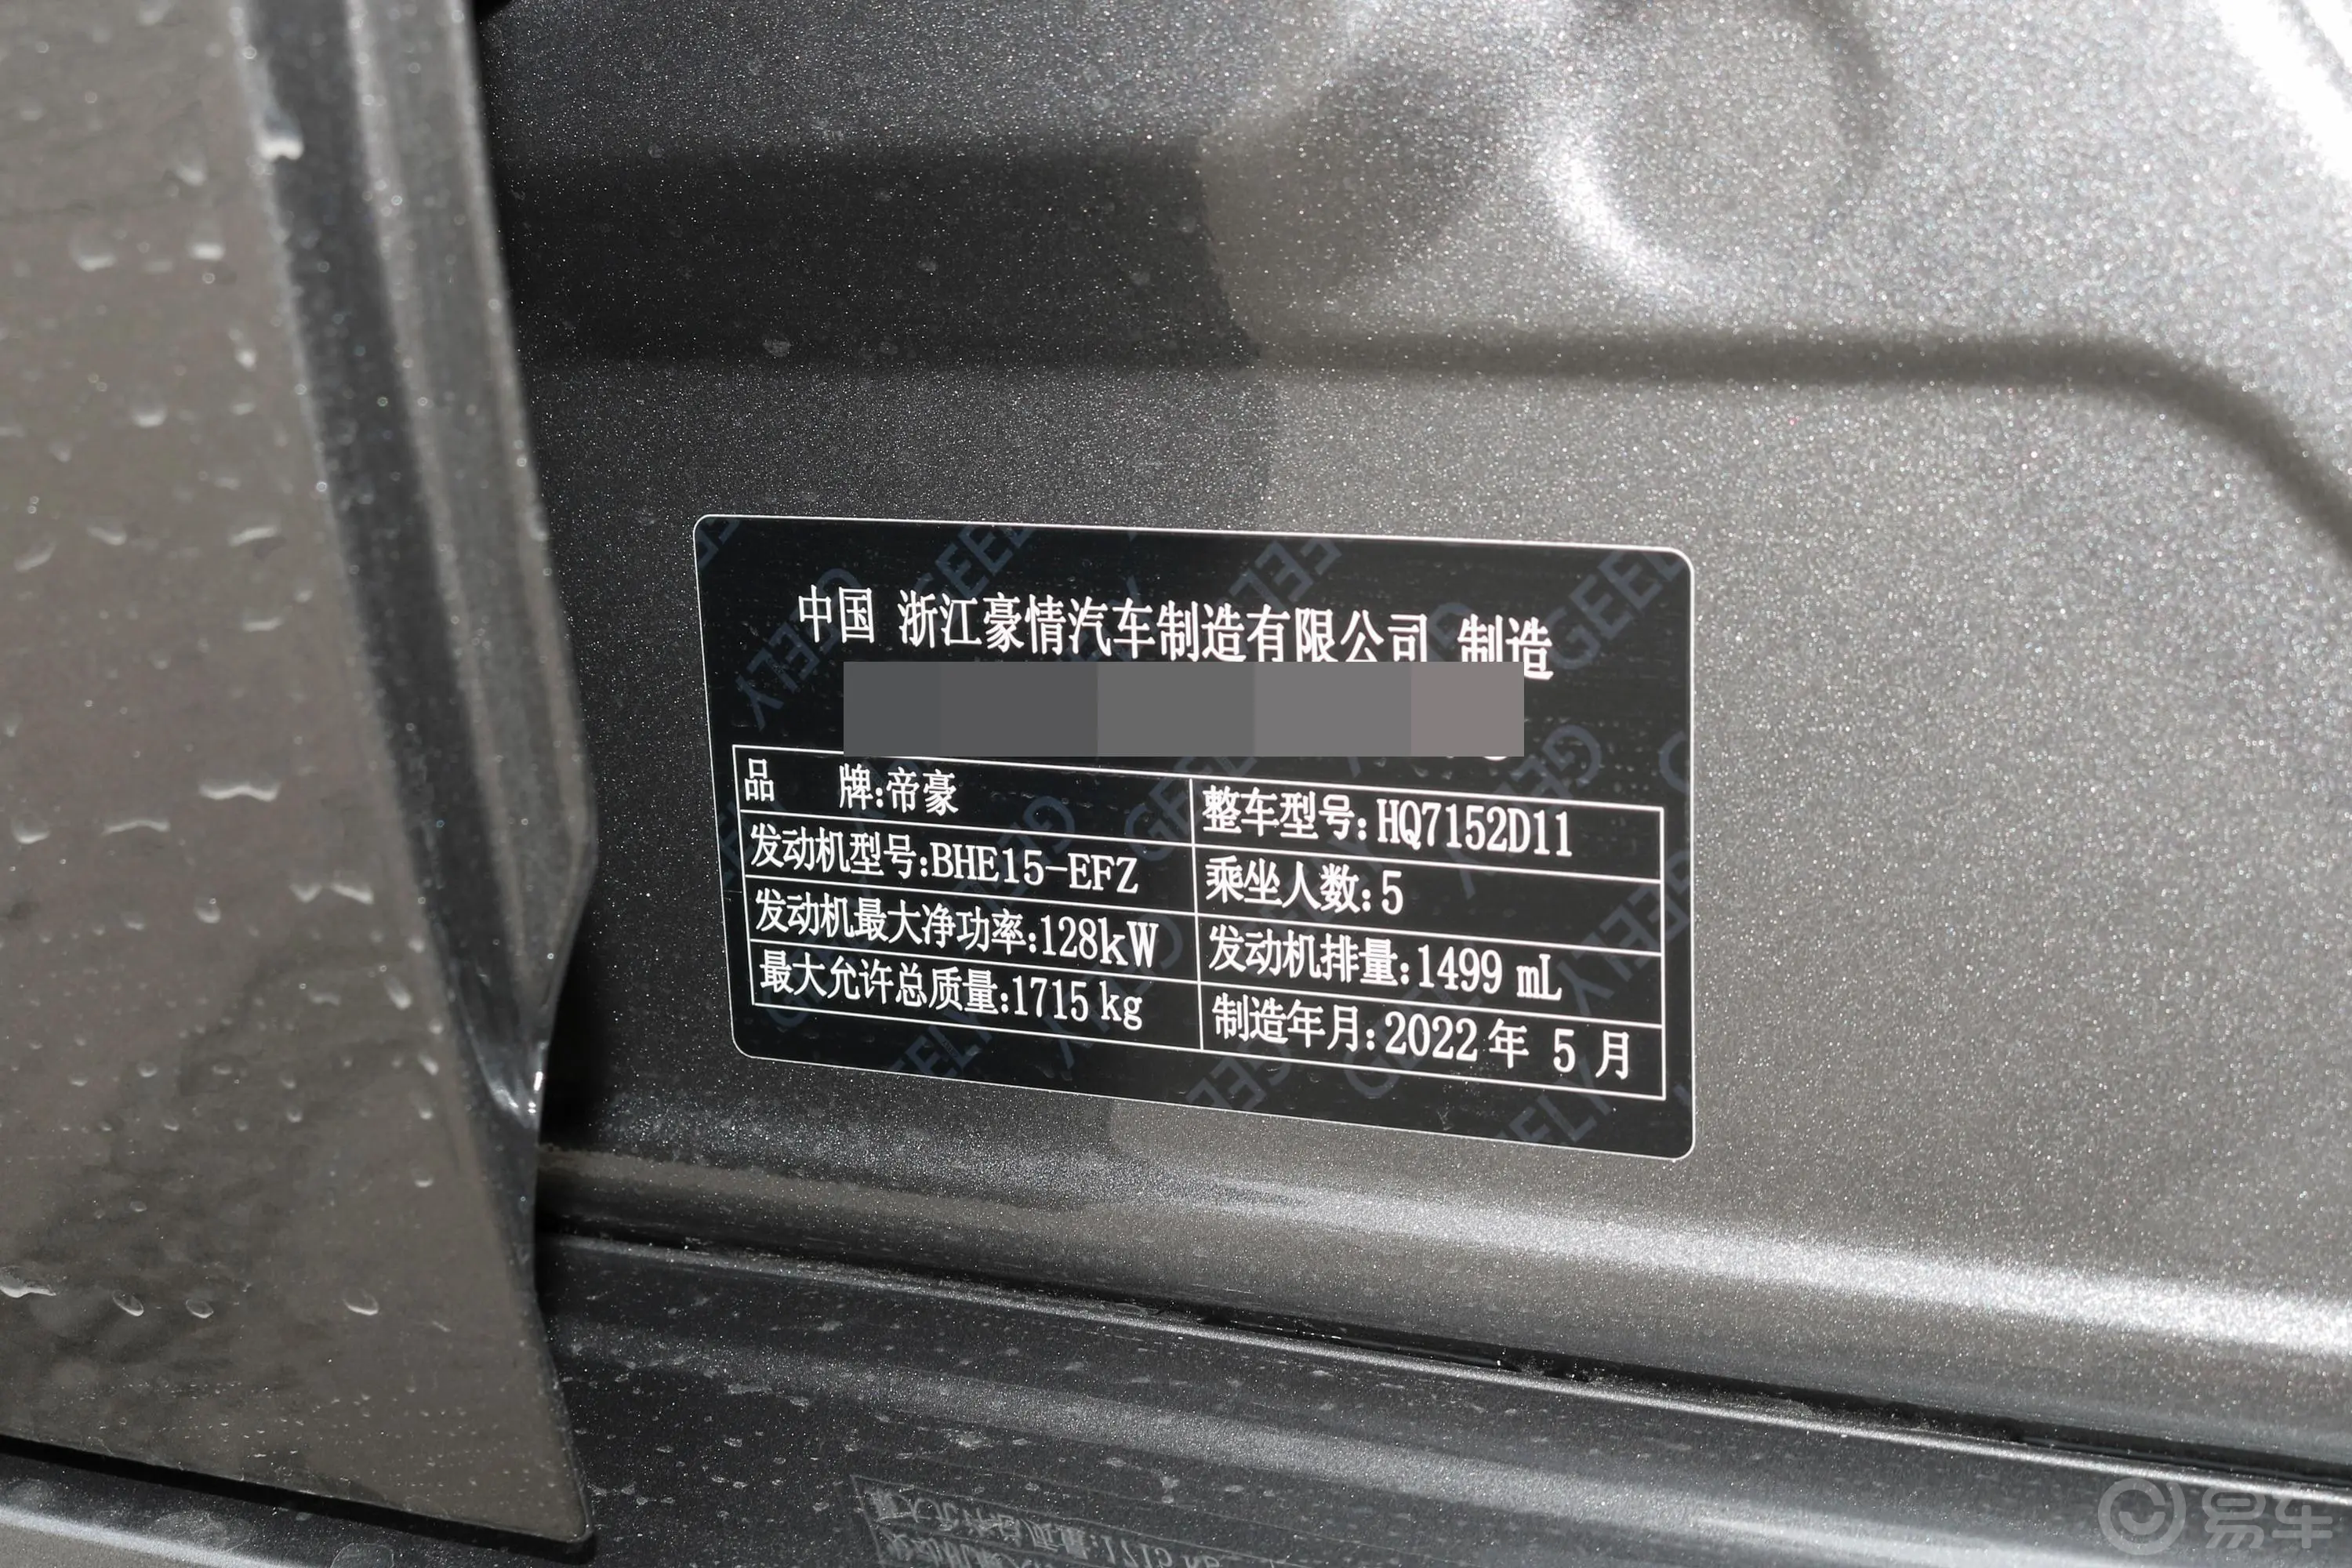 缤瑞缤瑞COOL 1.5T 电掣版车辆信息铭牌